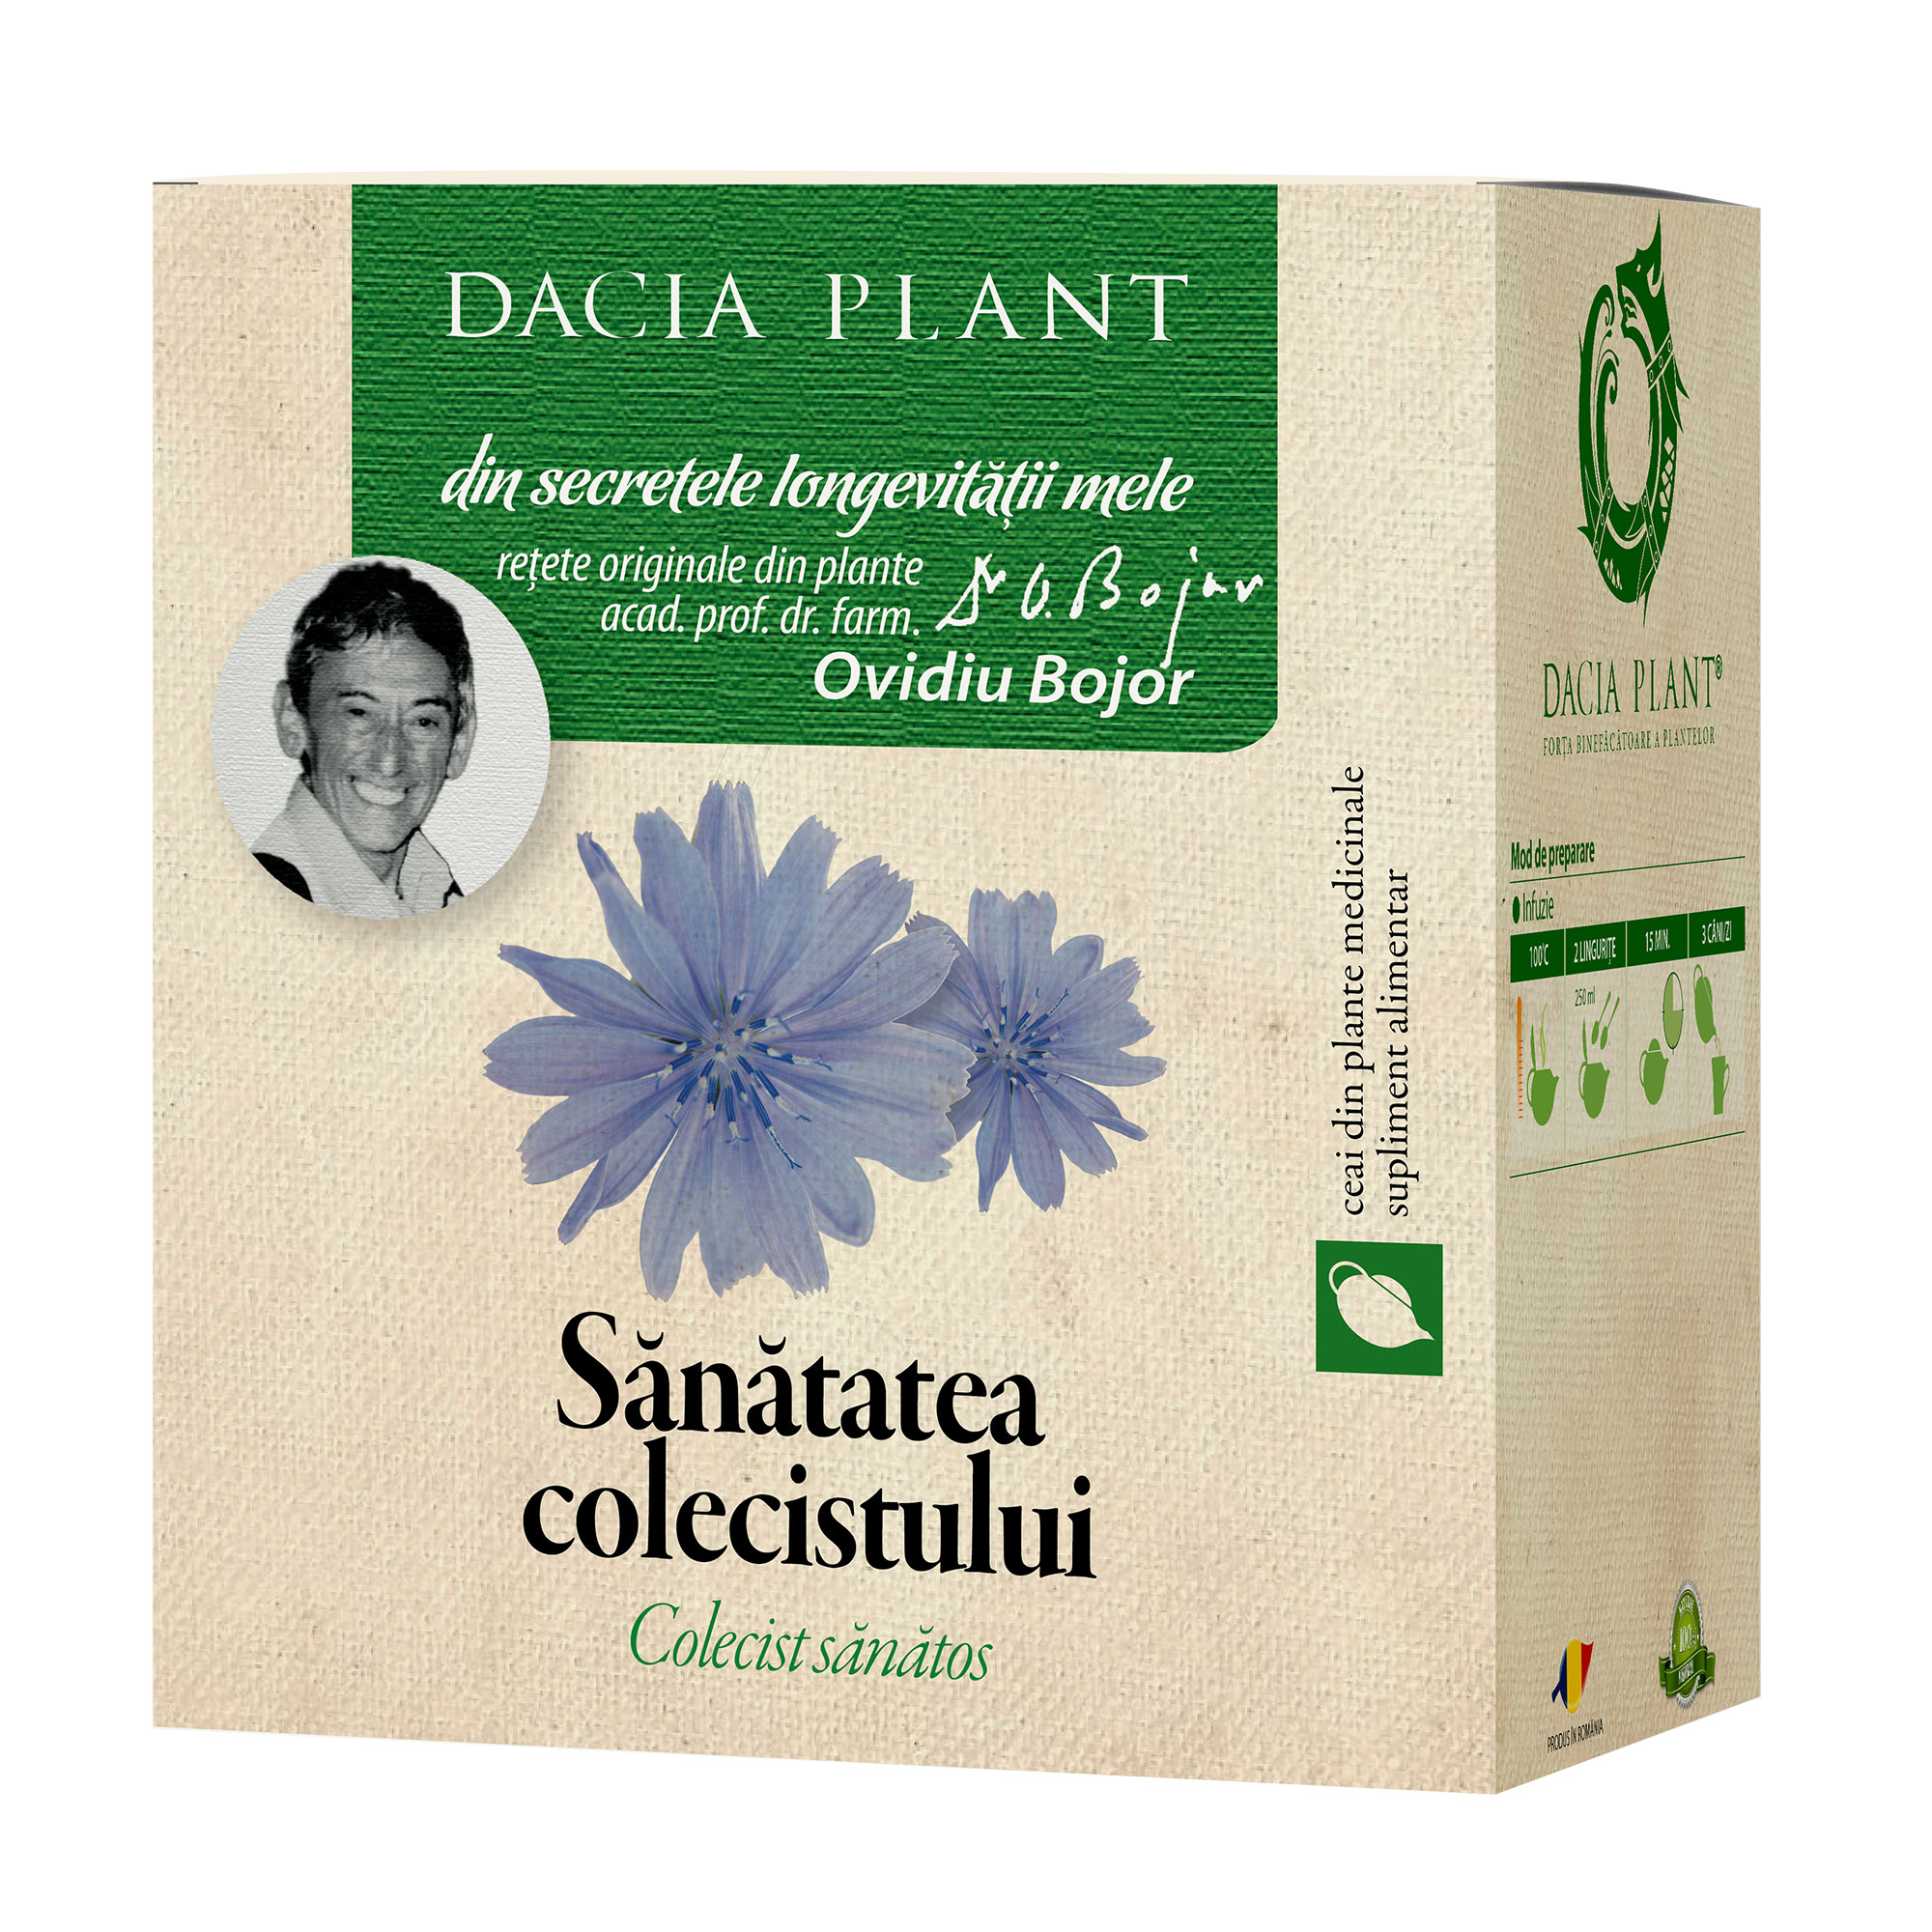 Ceai din plante medicinale Sanatatea colecistului, 50 g, Dacia Plant